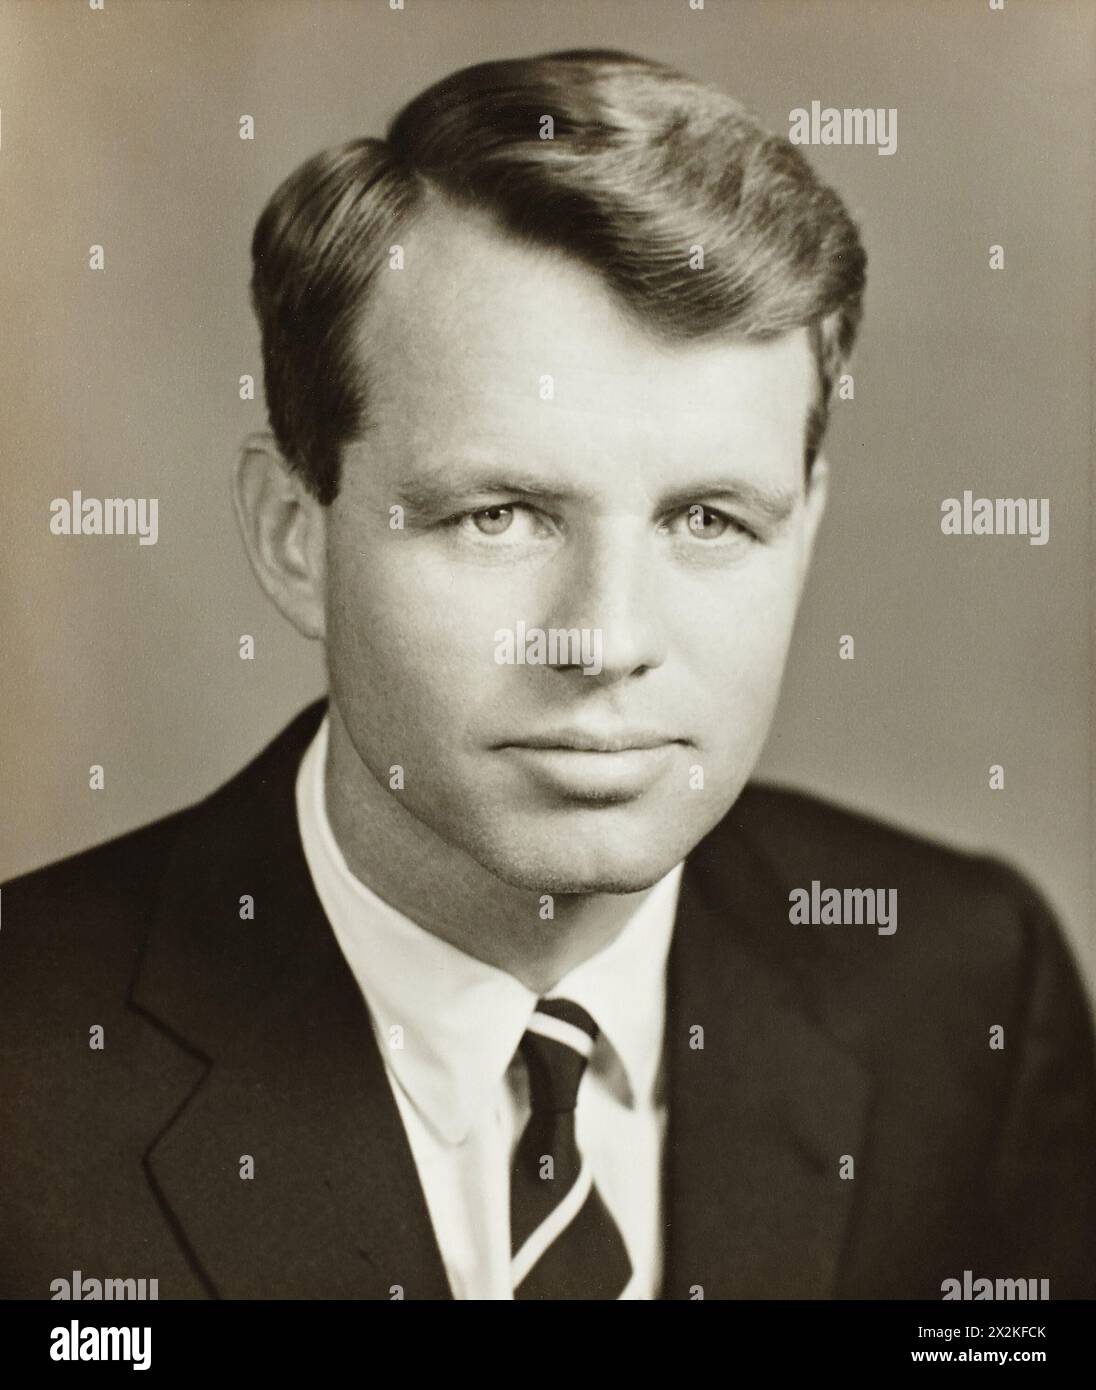 Primo ritratto di Robert F. Kennedy - Procuratore generale, 1961 Foto Stock